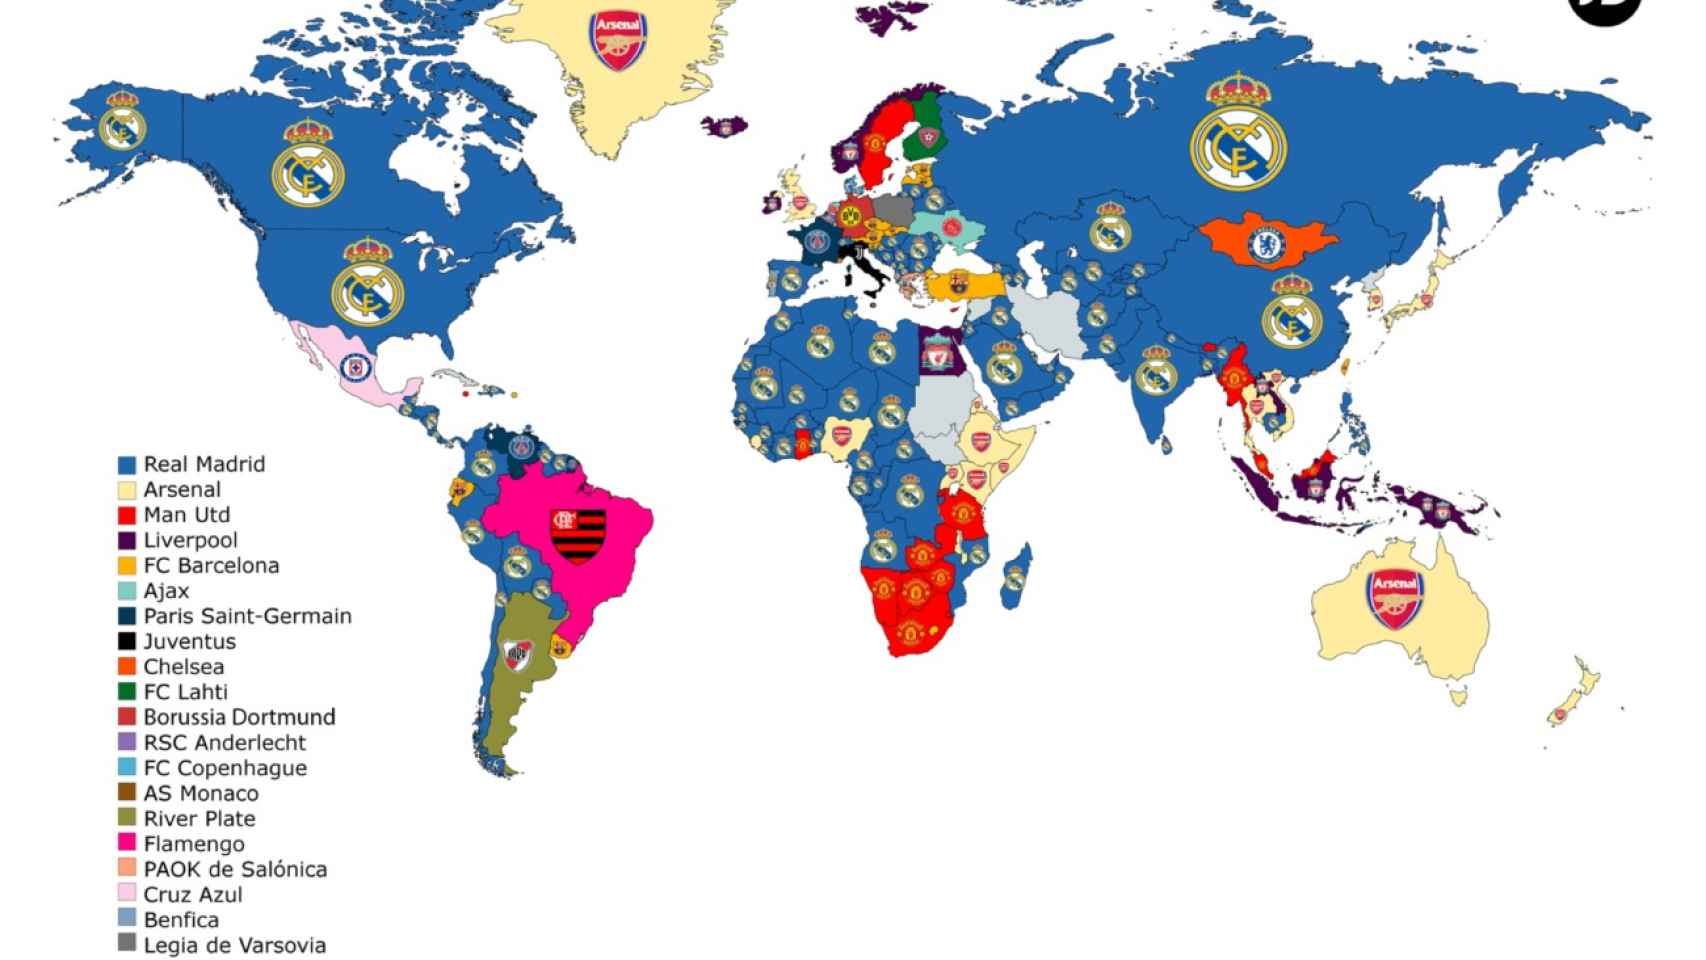 Los equipos de fútbol más buscados en Internet según países. Foto: JD Sports